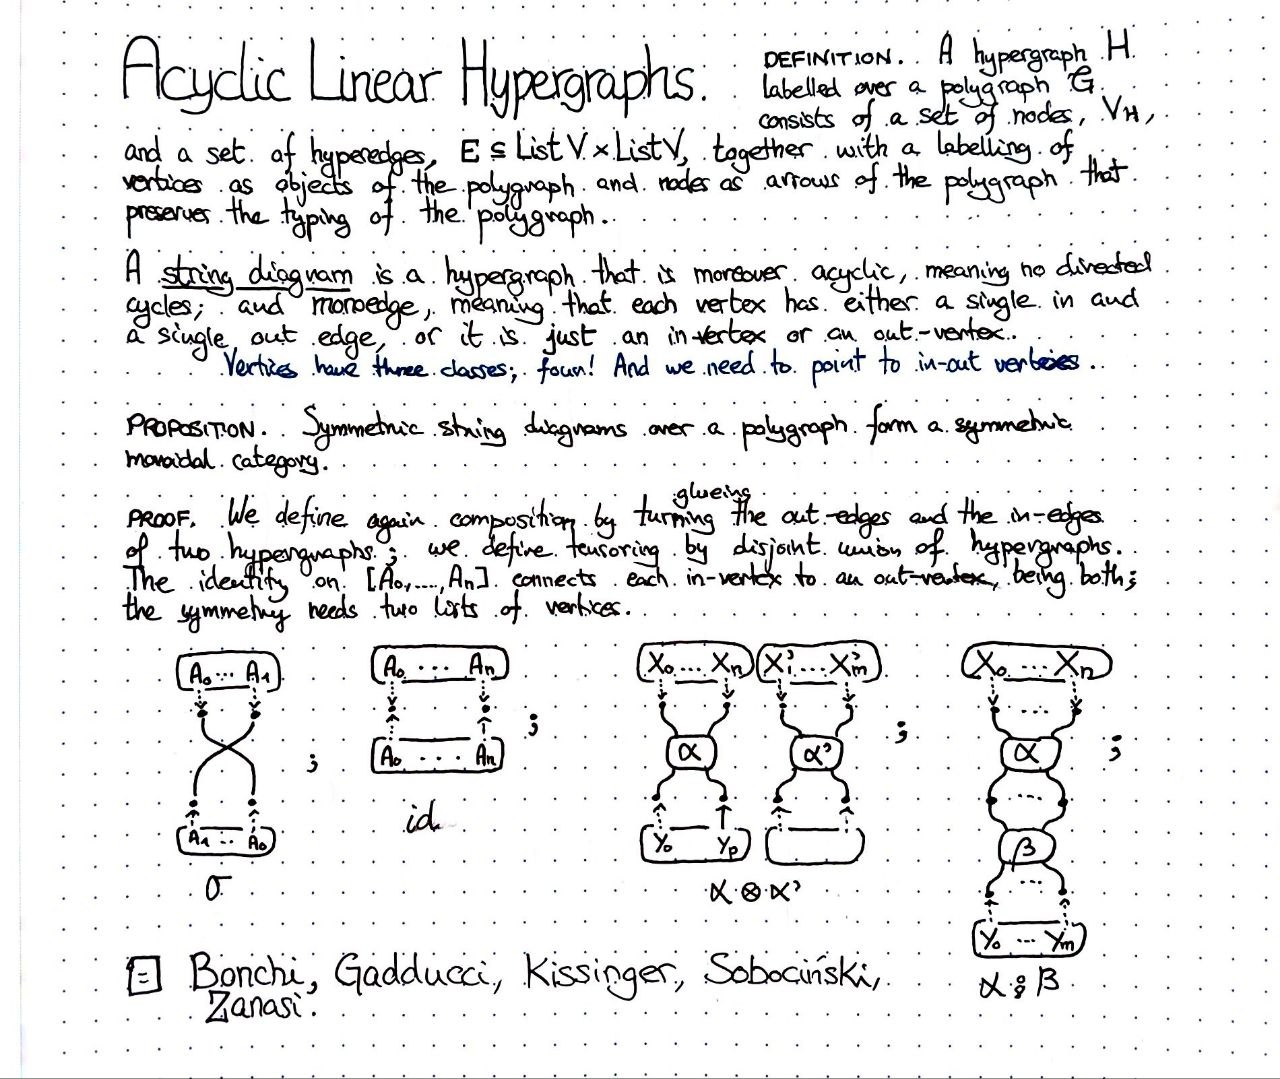 acyclic-linear-hypergraphs